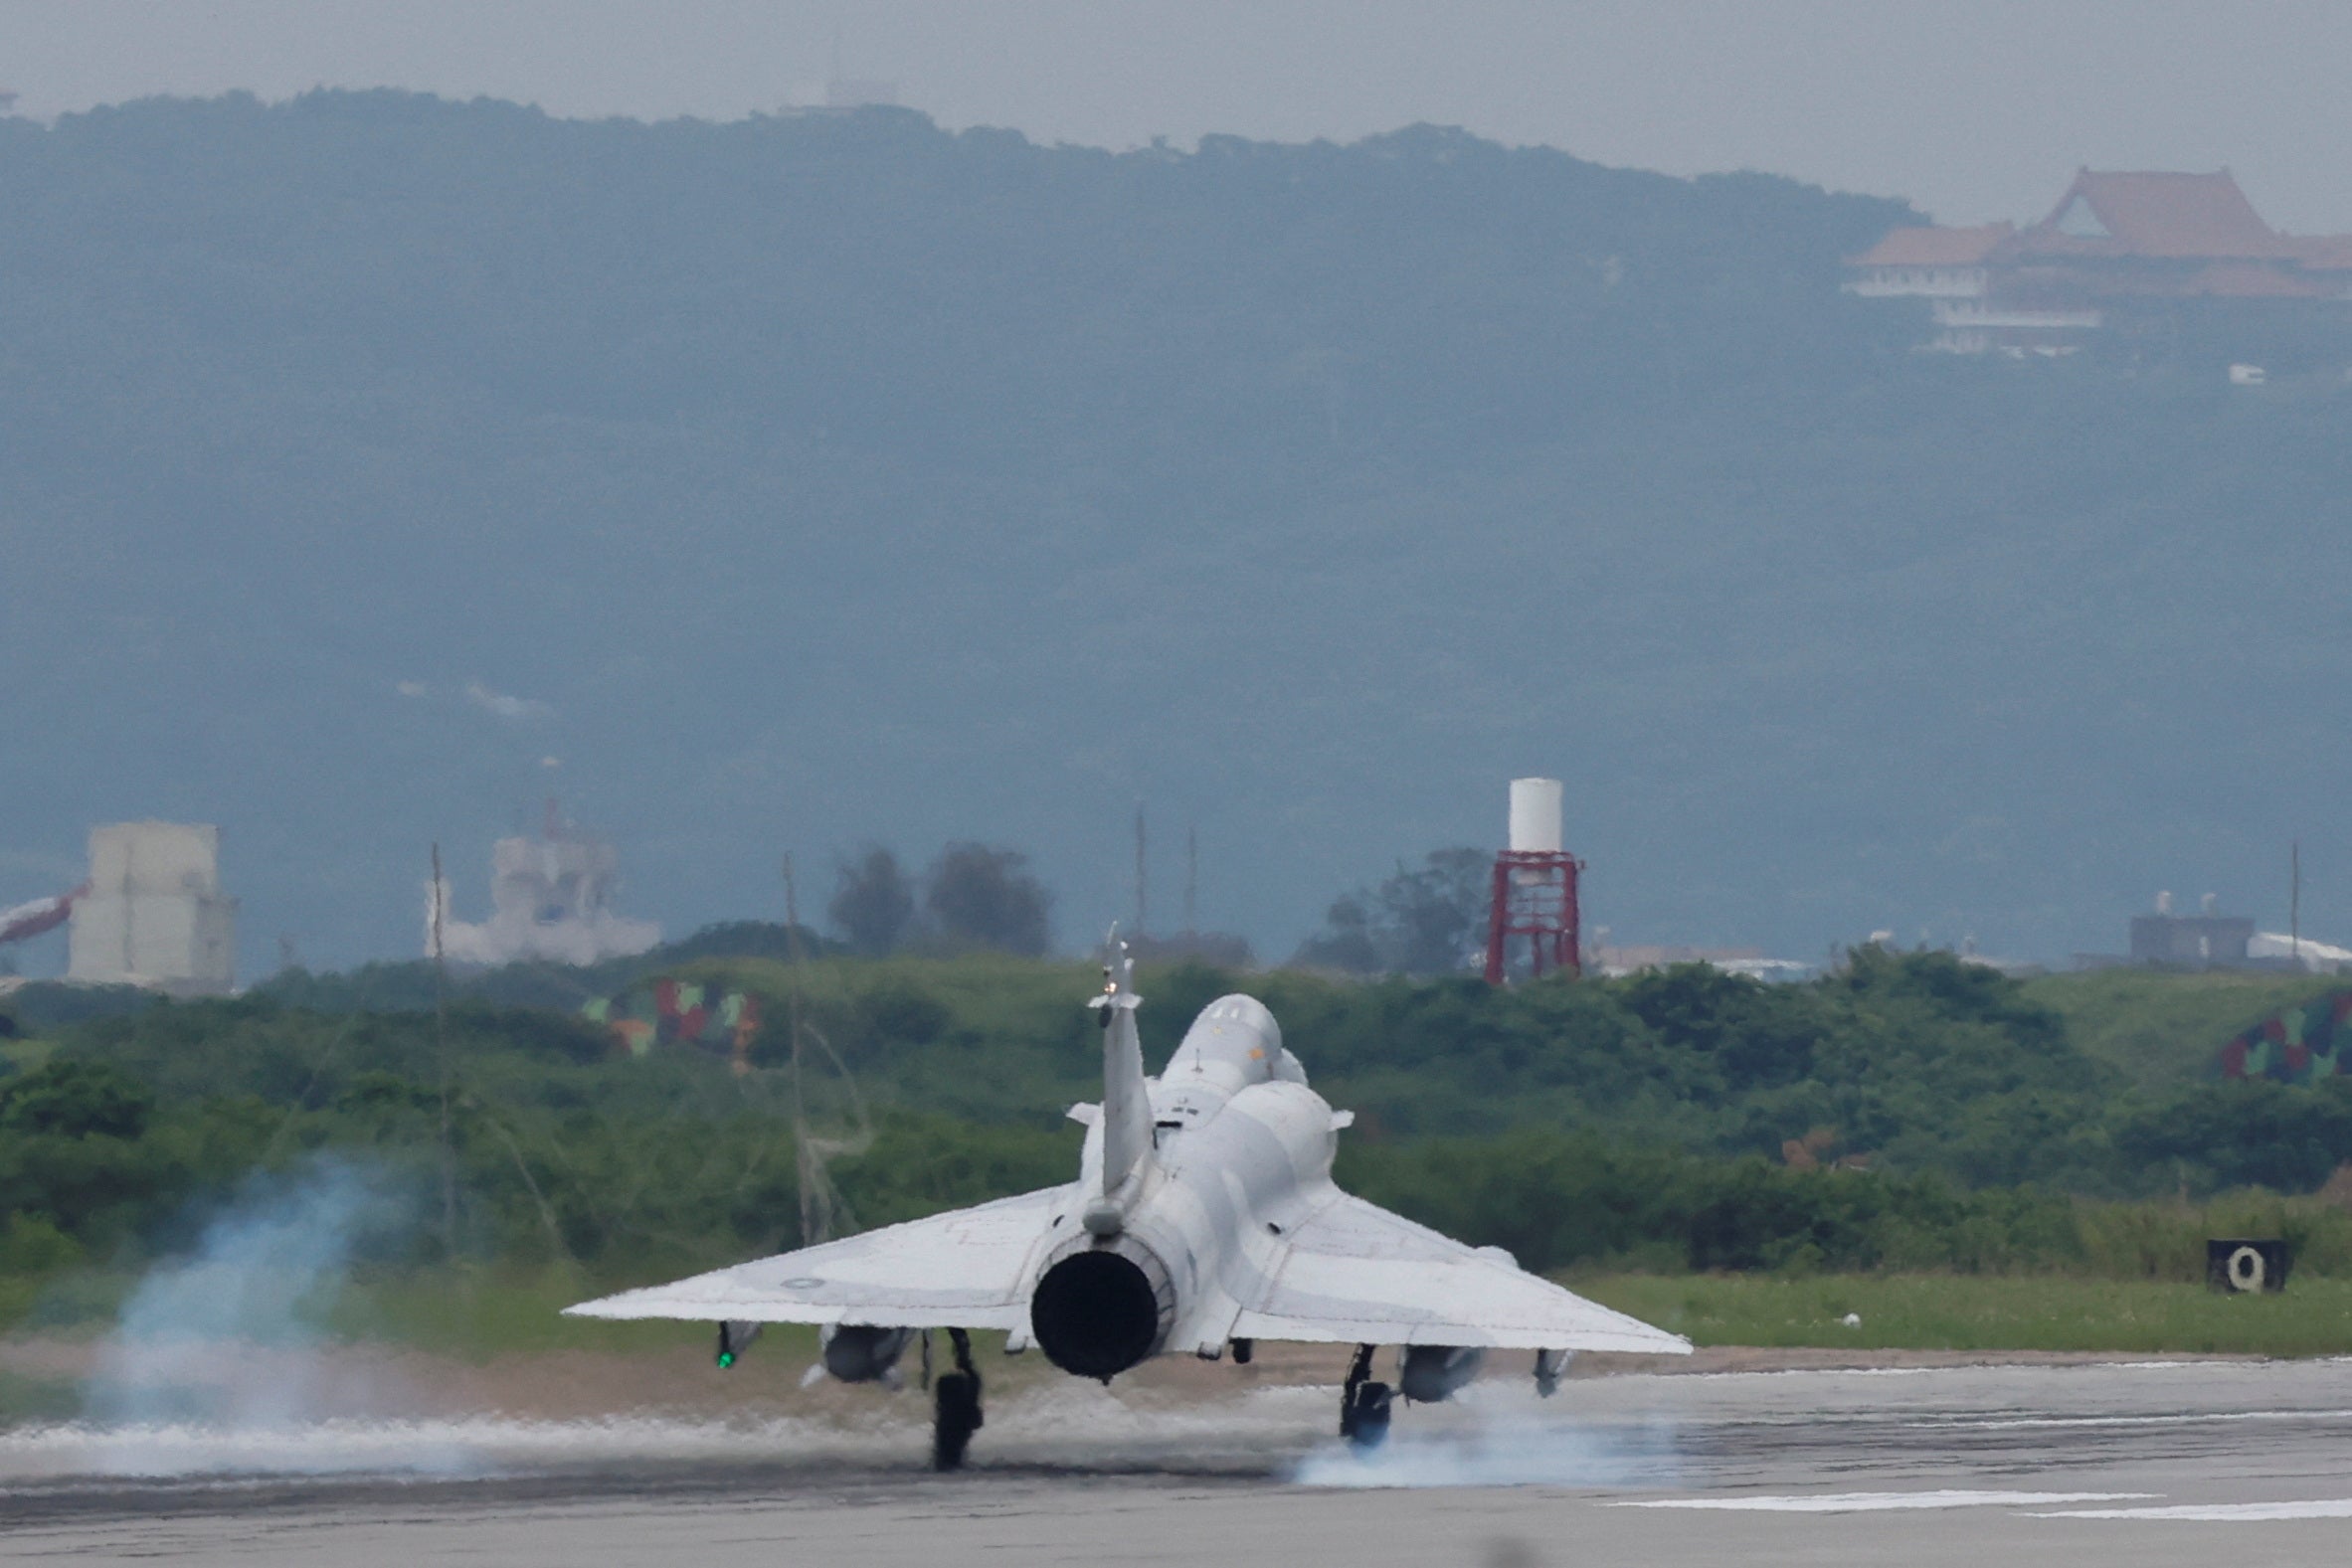 A Taiwan Air Force Mirage 2000-5 aircraft lands at Hsinchu Air Base in Hsinchu